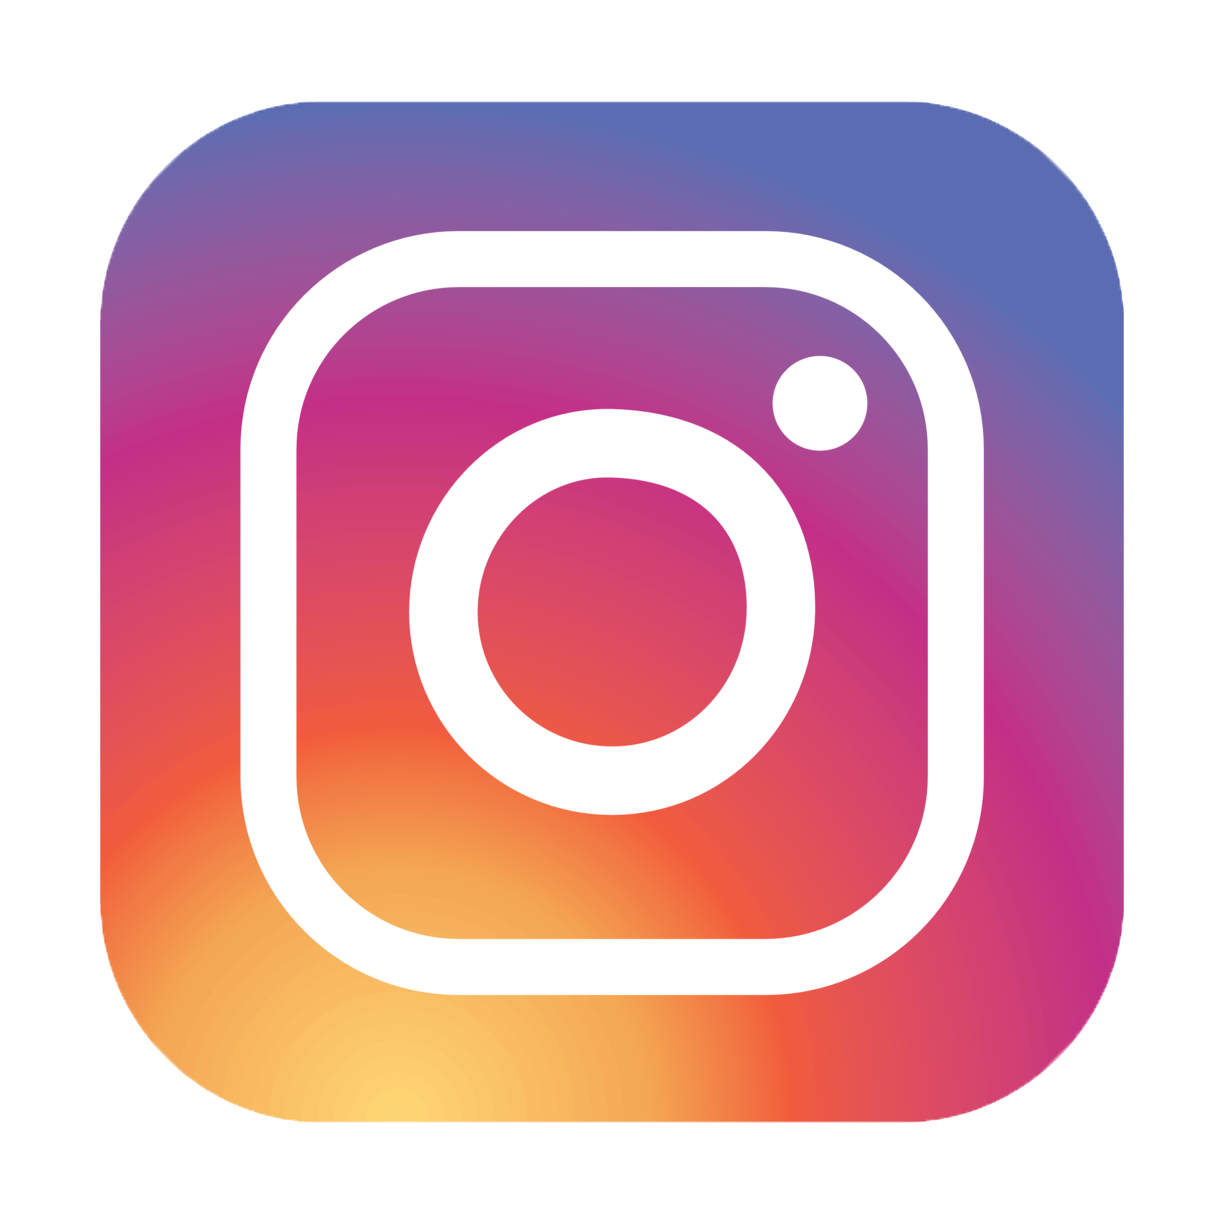 Logo Instagram Hd - Instagram Wallpapers (77+ pictures) / Download ...